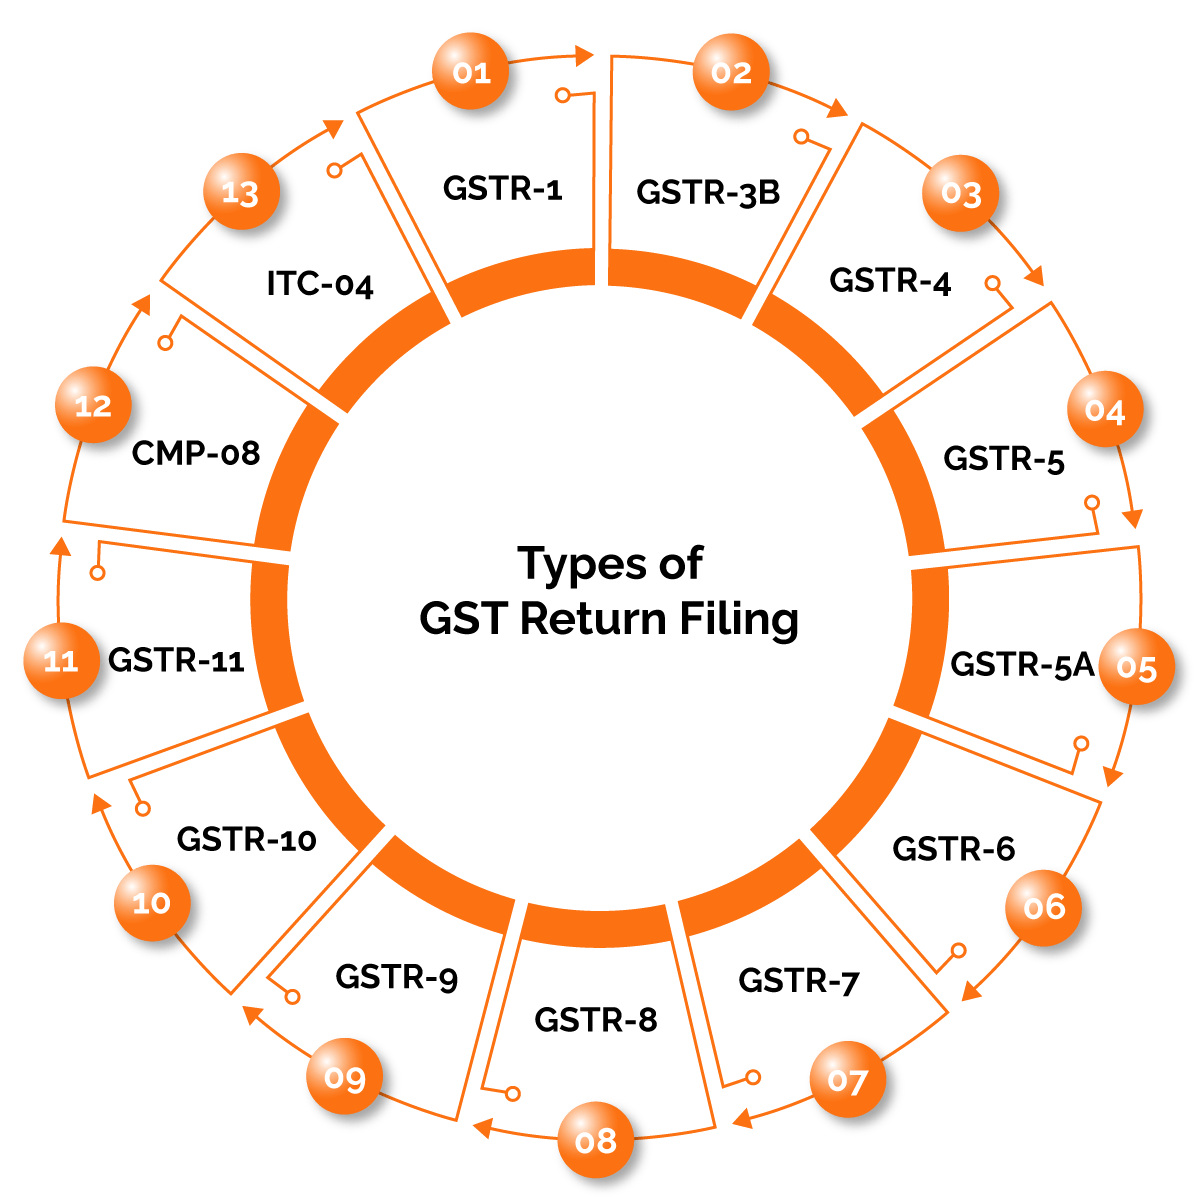 Types of GST Return Filing